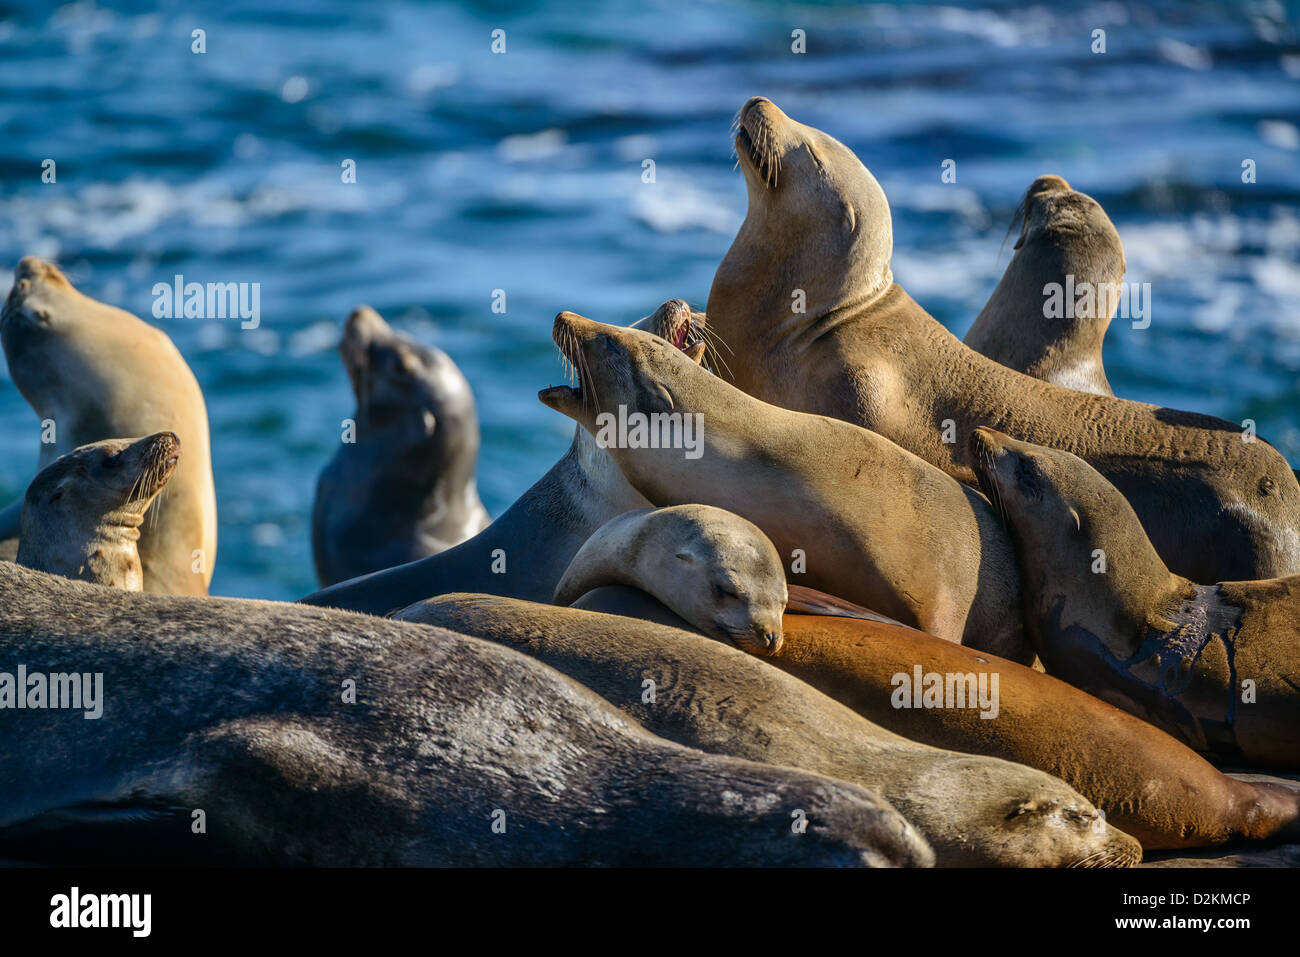 California i leoni di mare sulle rocce a La Jolla Cove, San Diego, California Foto Stock